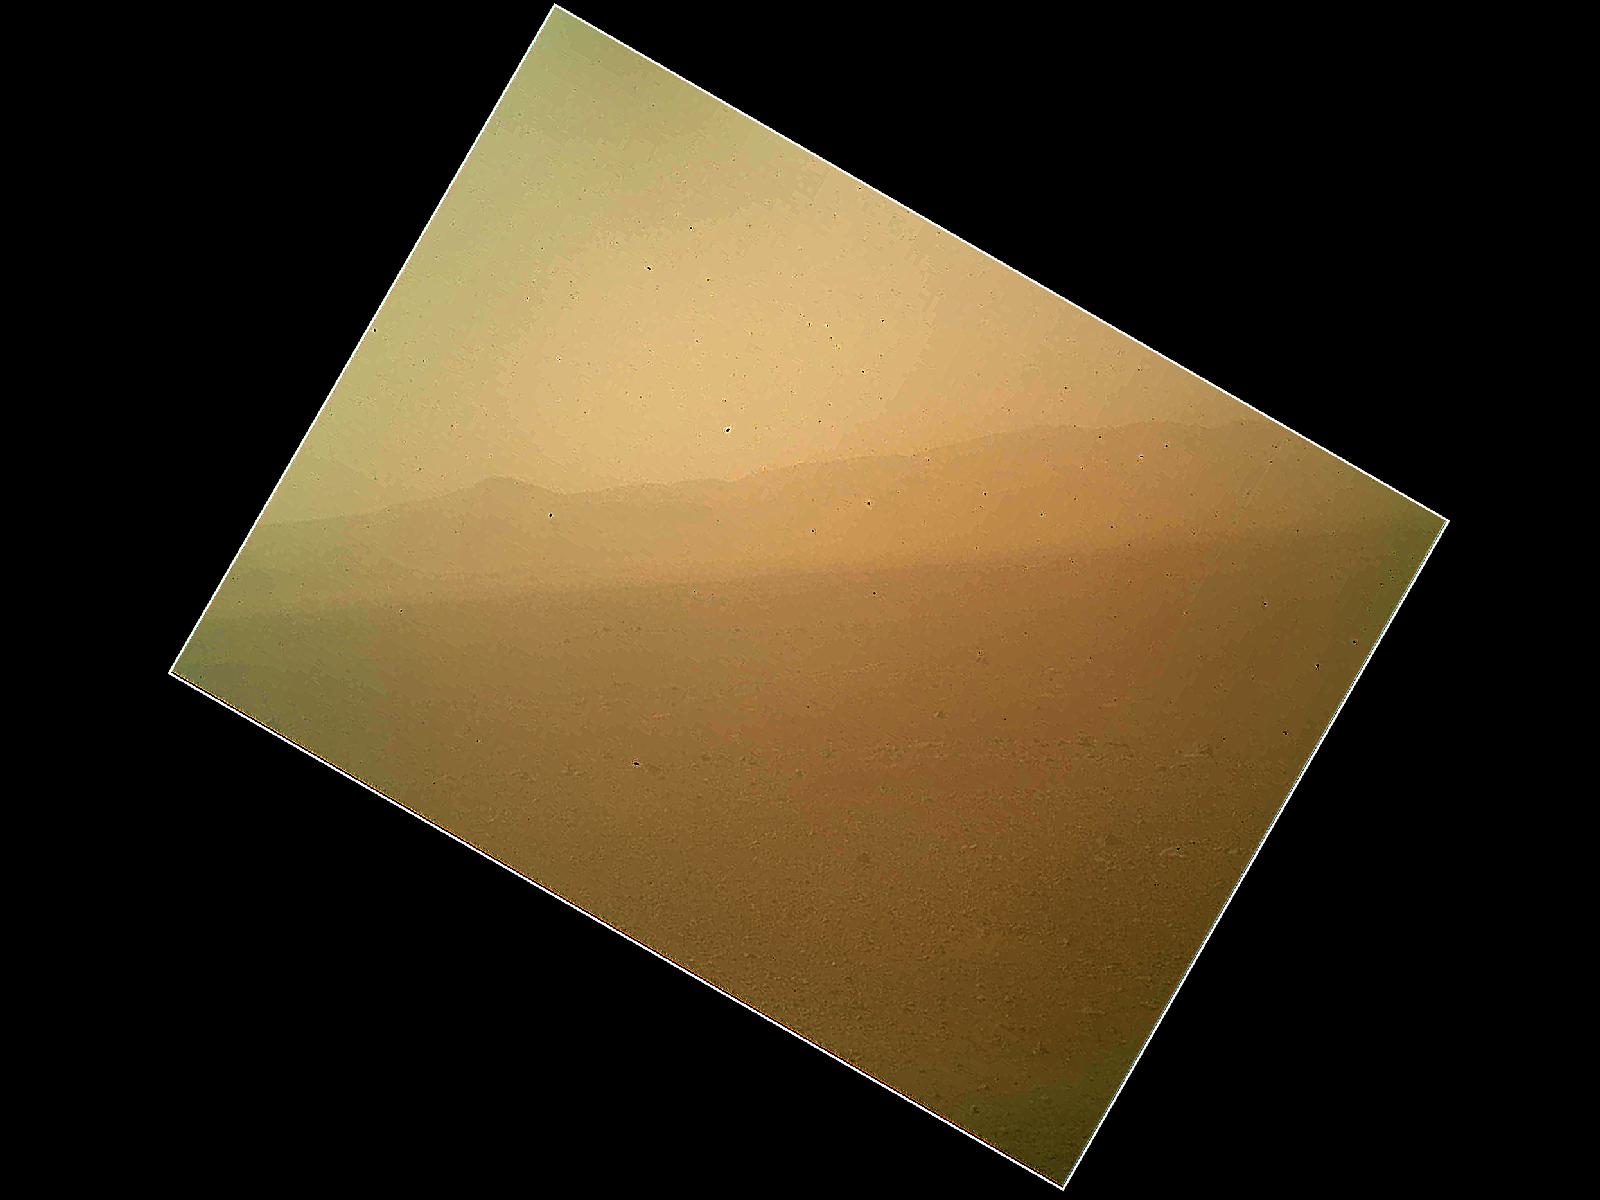 La photo ratée... Prise quelques heures après l'atterrissage&nbsp;par la caméra Mahli (Mars Hand Lens Imager), elle montre les parois, lointaines, du cratère Gale. Cet instrument est porté par le bras articulé, toujours en position&nbsp;repliée.&nbsp;Le flou de l'image vient de la poussière. Non, Curiosity ne s'est pas posé&nbsp;au milieu d'une tempête de sable. Cette poussière&nbsp;est&nbsp;celle qui s'est déposée&nbsp;sur le cache de l'objectif, toujours en place. Ce n'est pas un oubli, bien sûr.&nbsp;Transparent, il protège la caméra et permet, même fermé, ce genre de prise de vue. Quand Curiosity commencera à travailler et qu'il dépliera son bras, portant plusieurs instruments, ce cache sera retiré.&nbsp;©&nbsp;Nasa,&nbsp;JPL-Caltech,&nbsp;Malin Space Science Systems